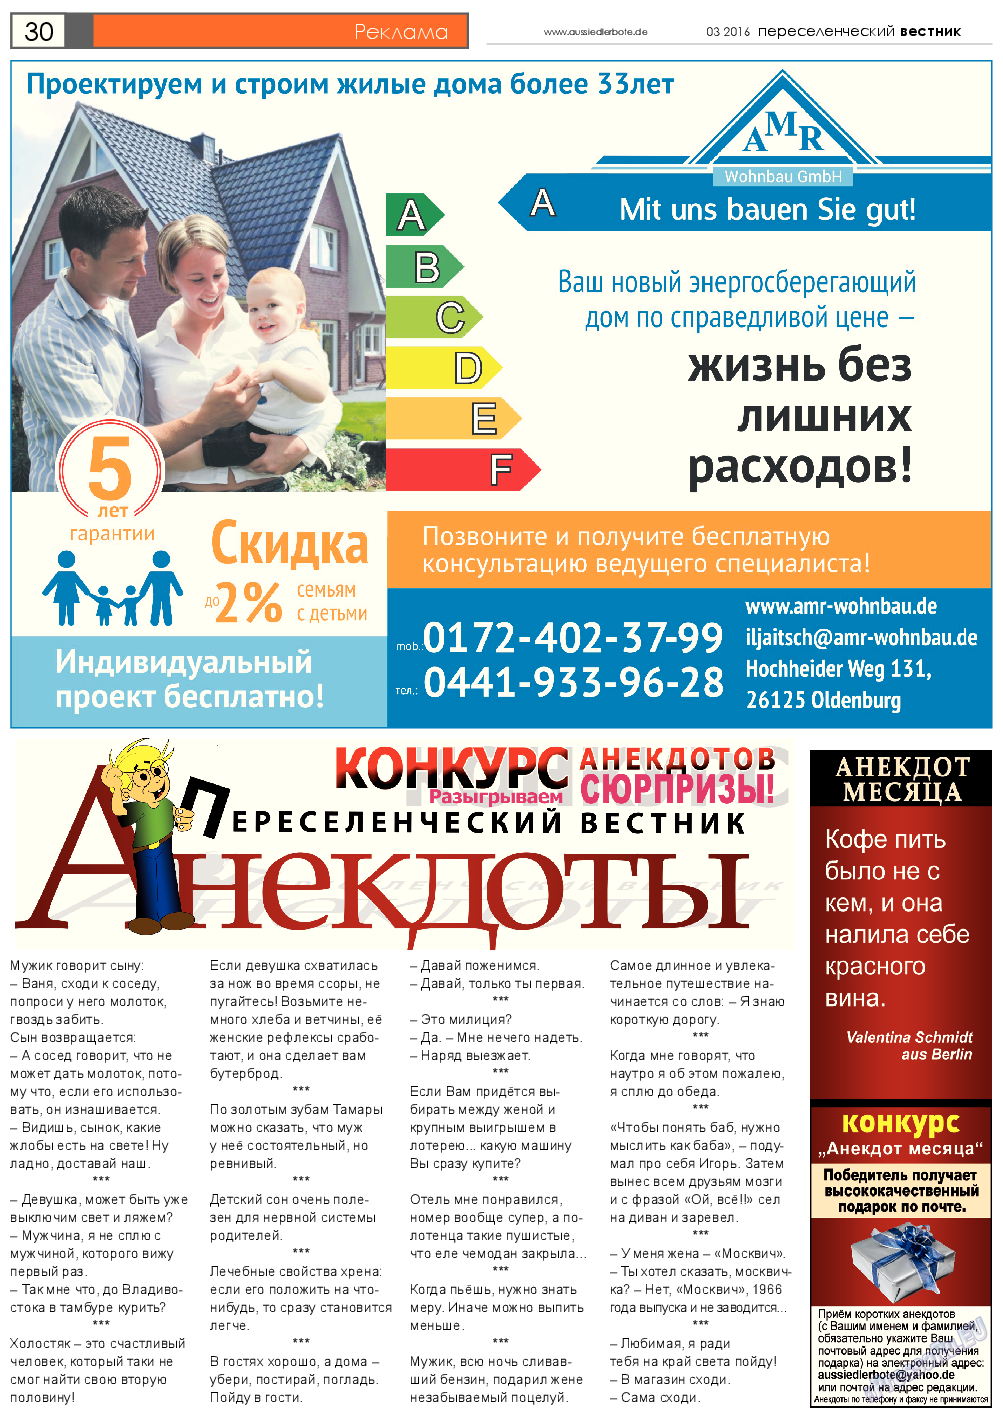 Переселенческий вестник (газета). 2016 год, номер 3, стр. 30